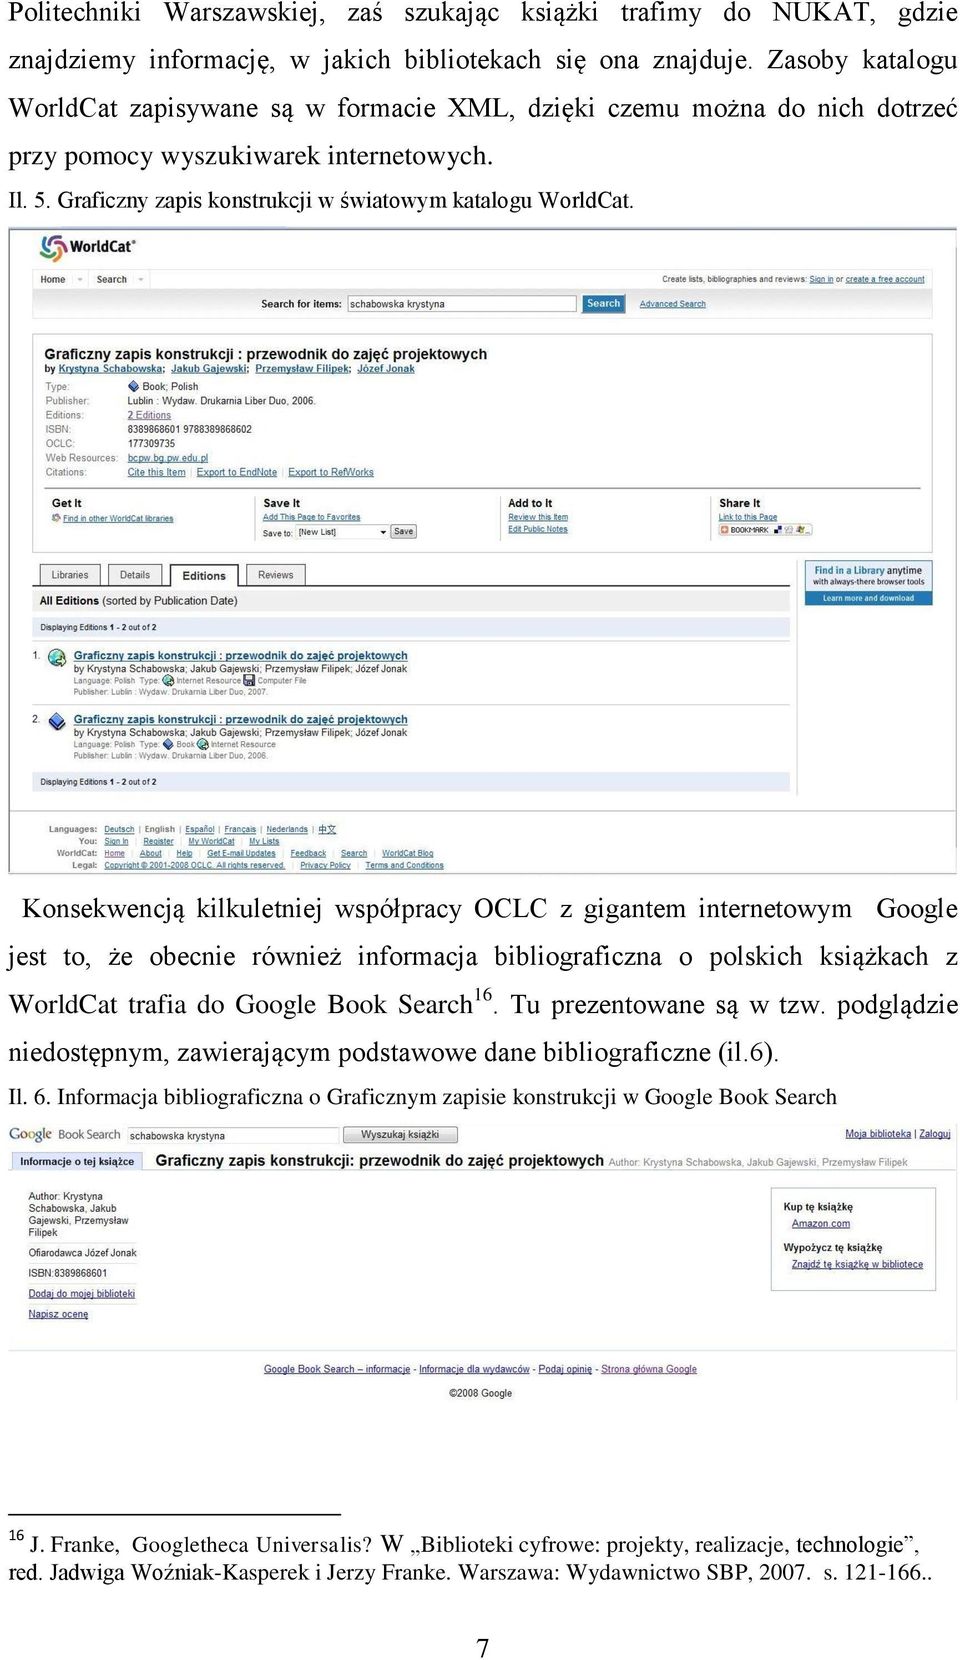 Konsekwencją kilkuletniej współpracy OCLC z gigantem internetowym Google jest to, że obecnie również informacja bibliograficzna o polskich książkach z WorldCat trafia do Google Book Search 16.